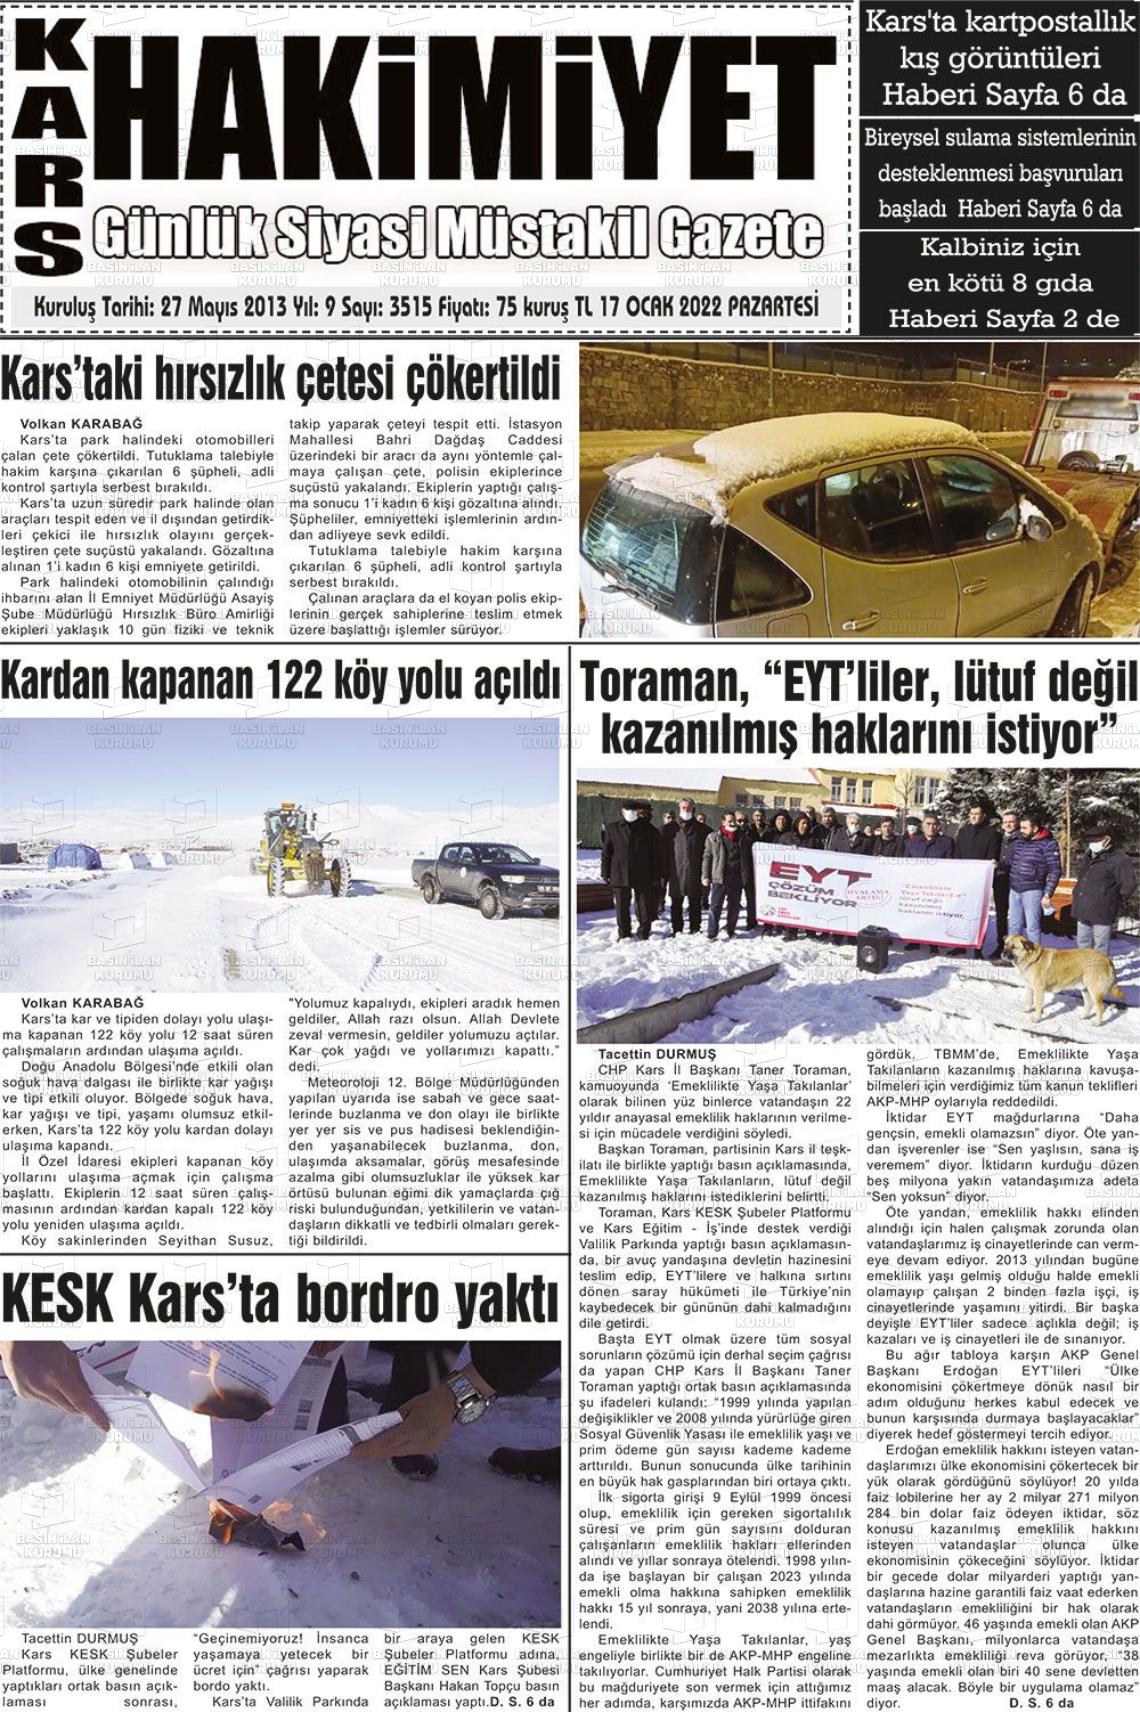 17 Ocak 2022 Kars Manşet Gazete Manşeti